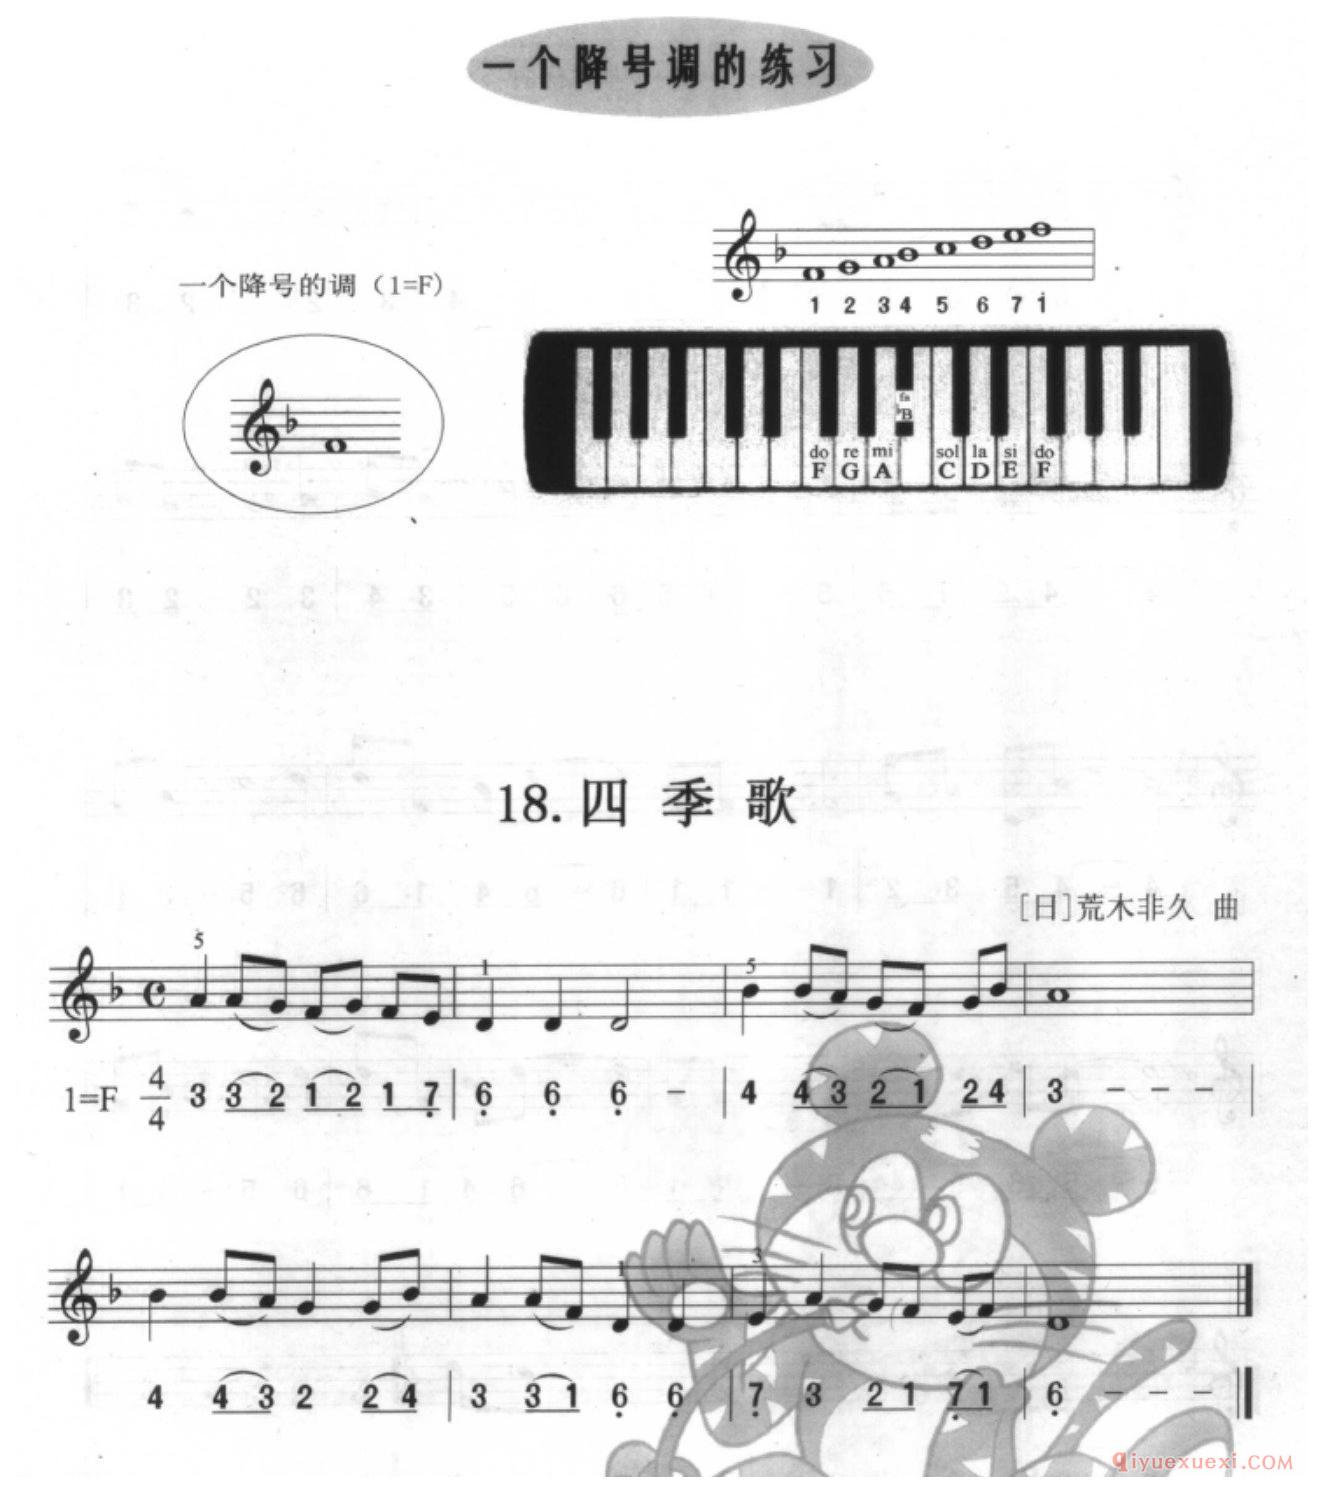 口风琴单声部乐曲《四季歌》—个降号调的练习